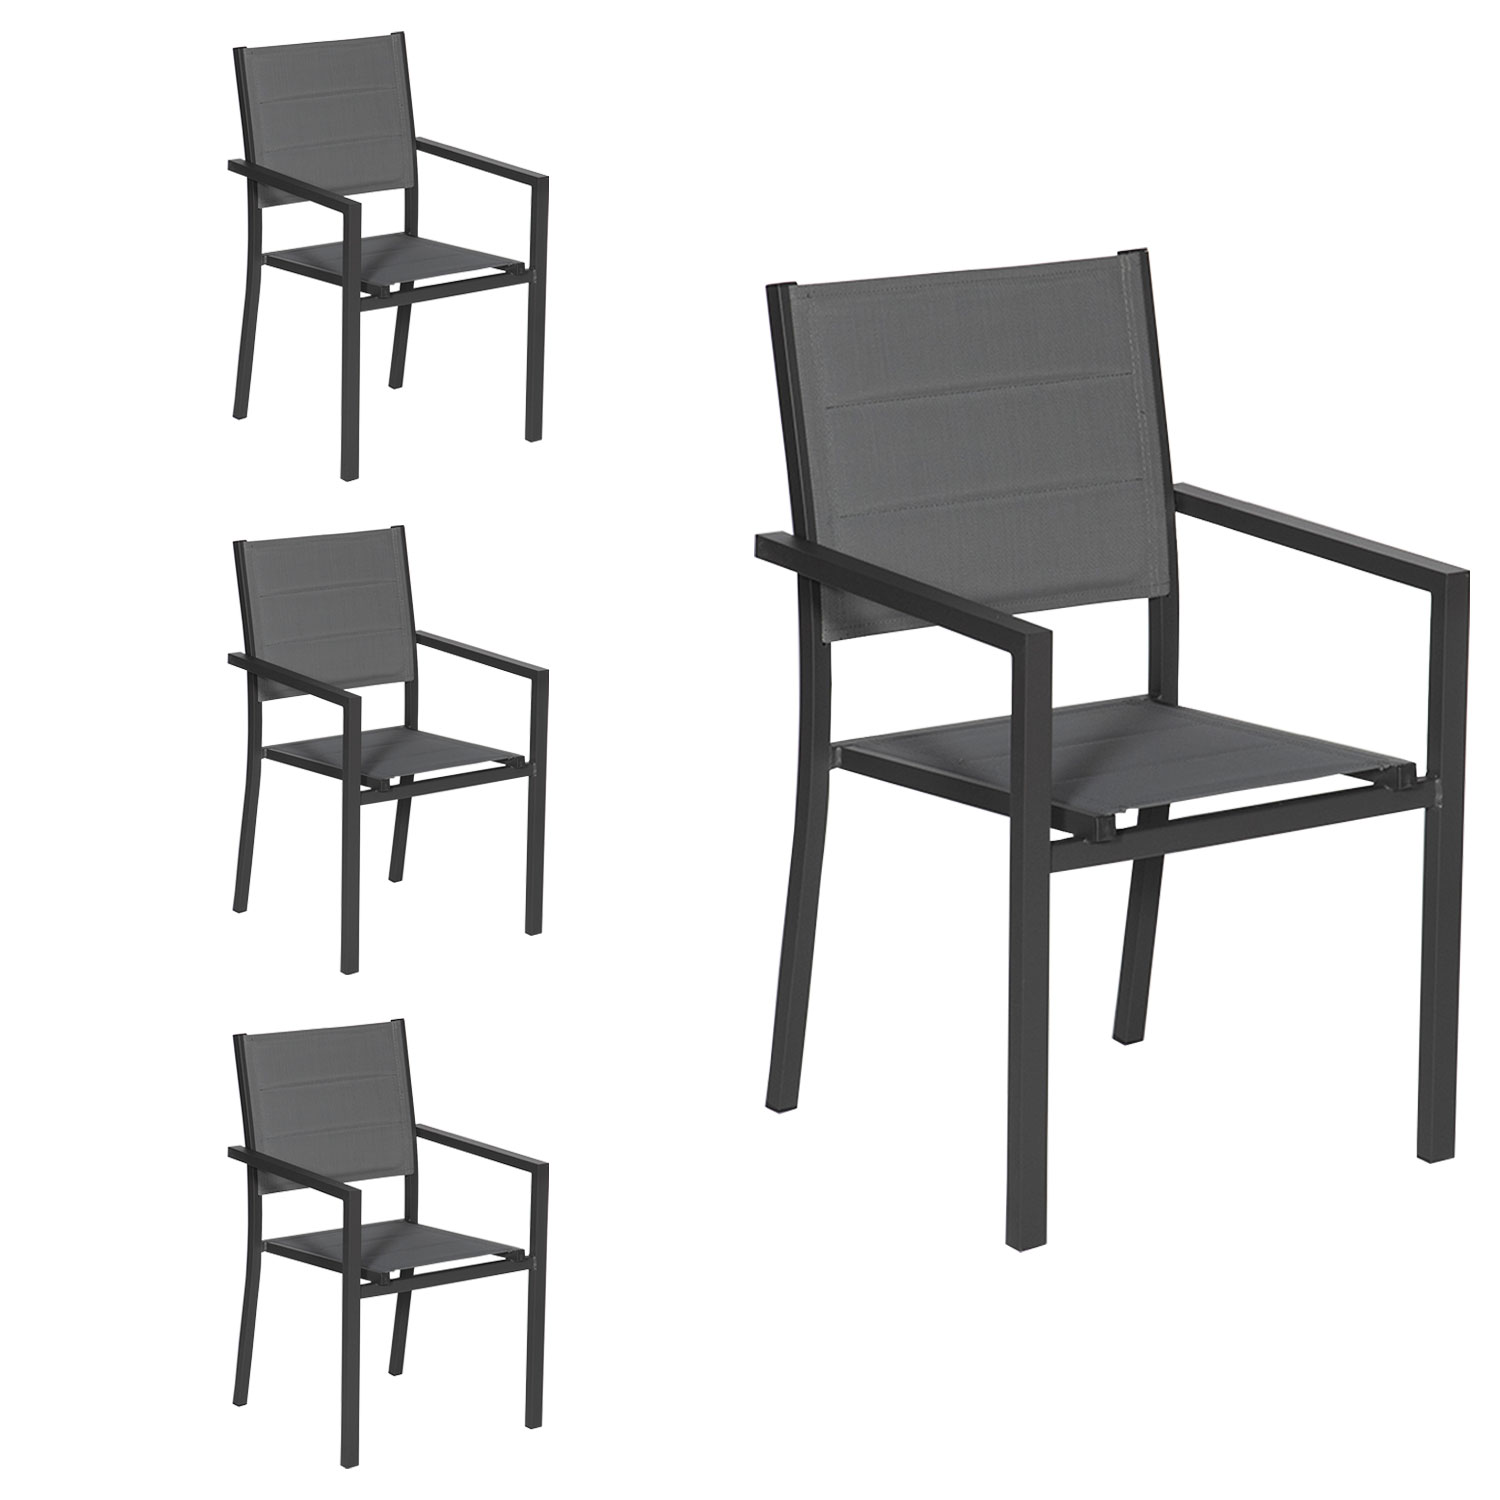 Satz von 4 gepolsterten Stühlen aus anthrazitfarbenem Aluminium - graues Textilene